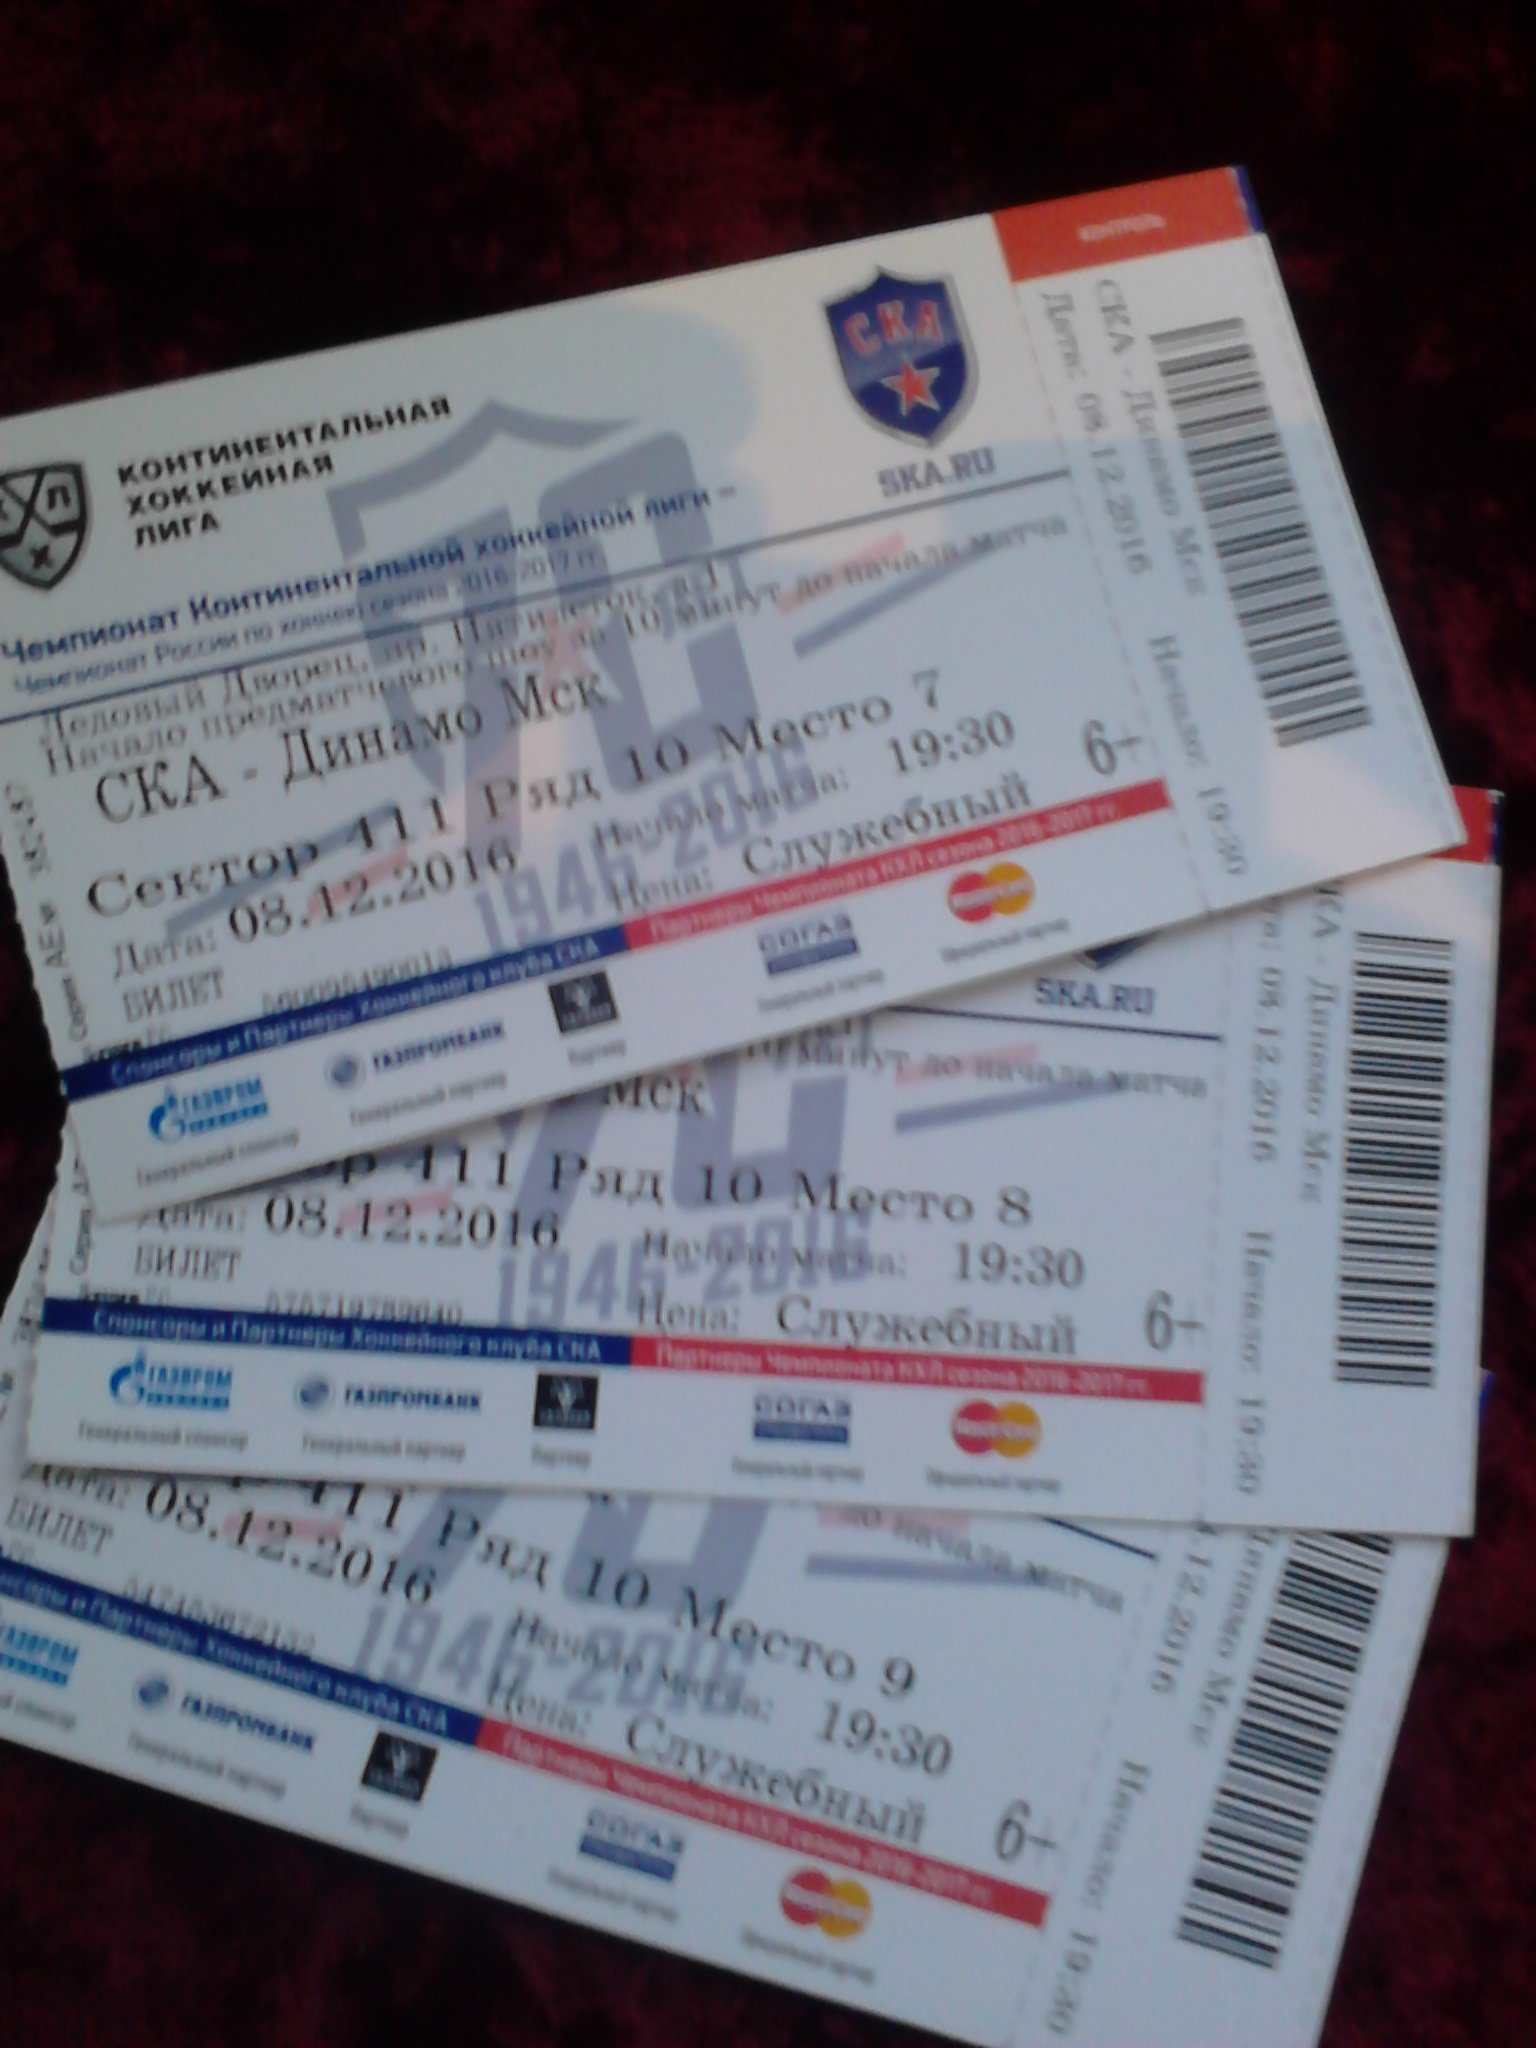 Ска динамо купить билеты. Билет на матч СКА. Билет на хоккейный матч. Билет в Санкт Петербург фото. Билеты на матч СКА В СПБ.